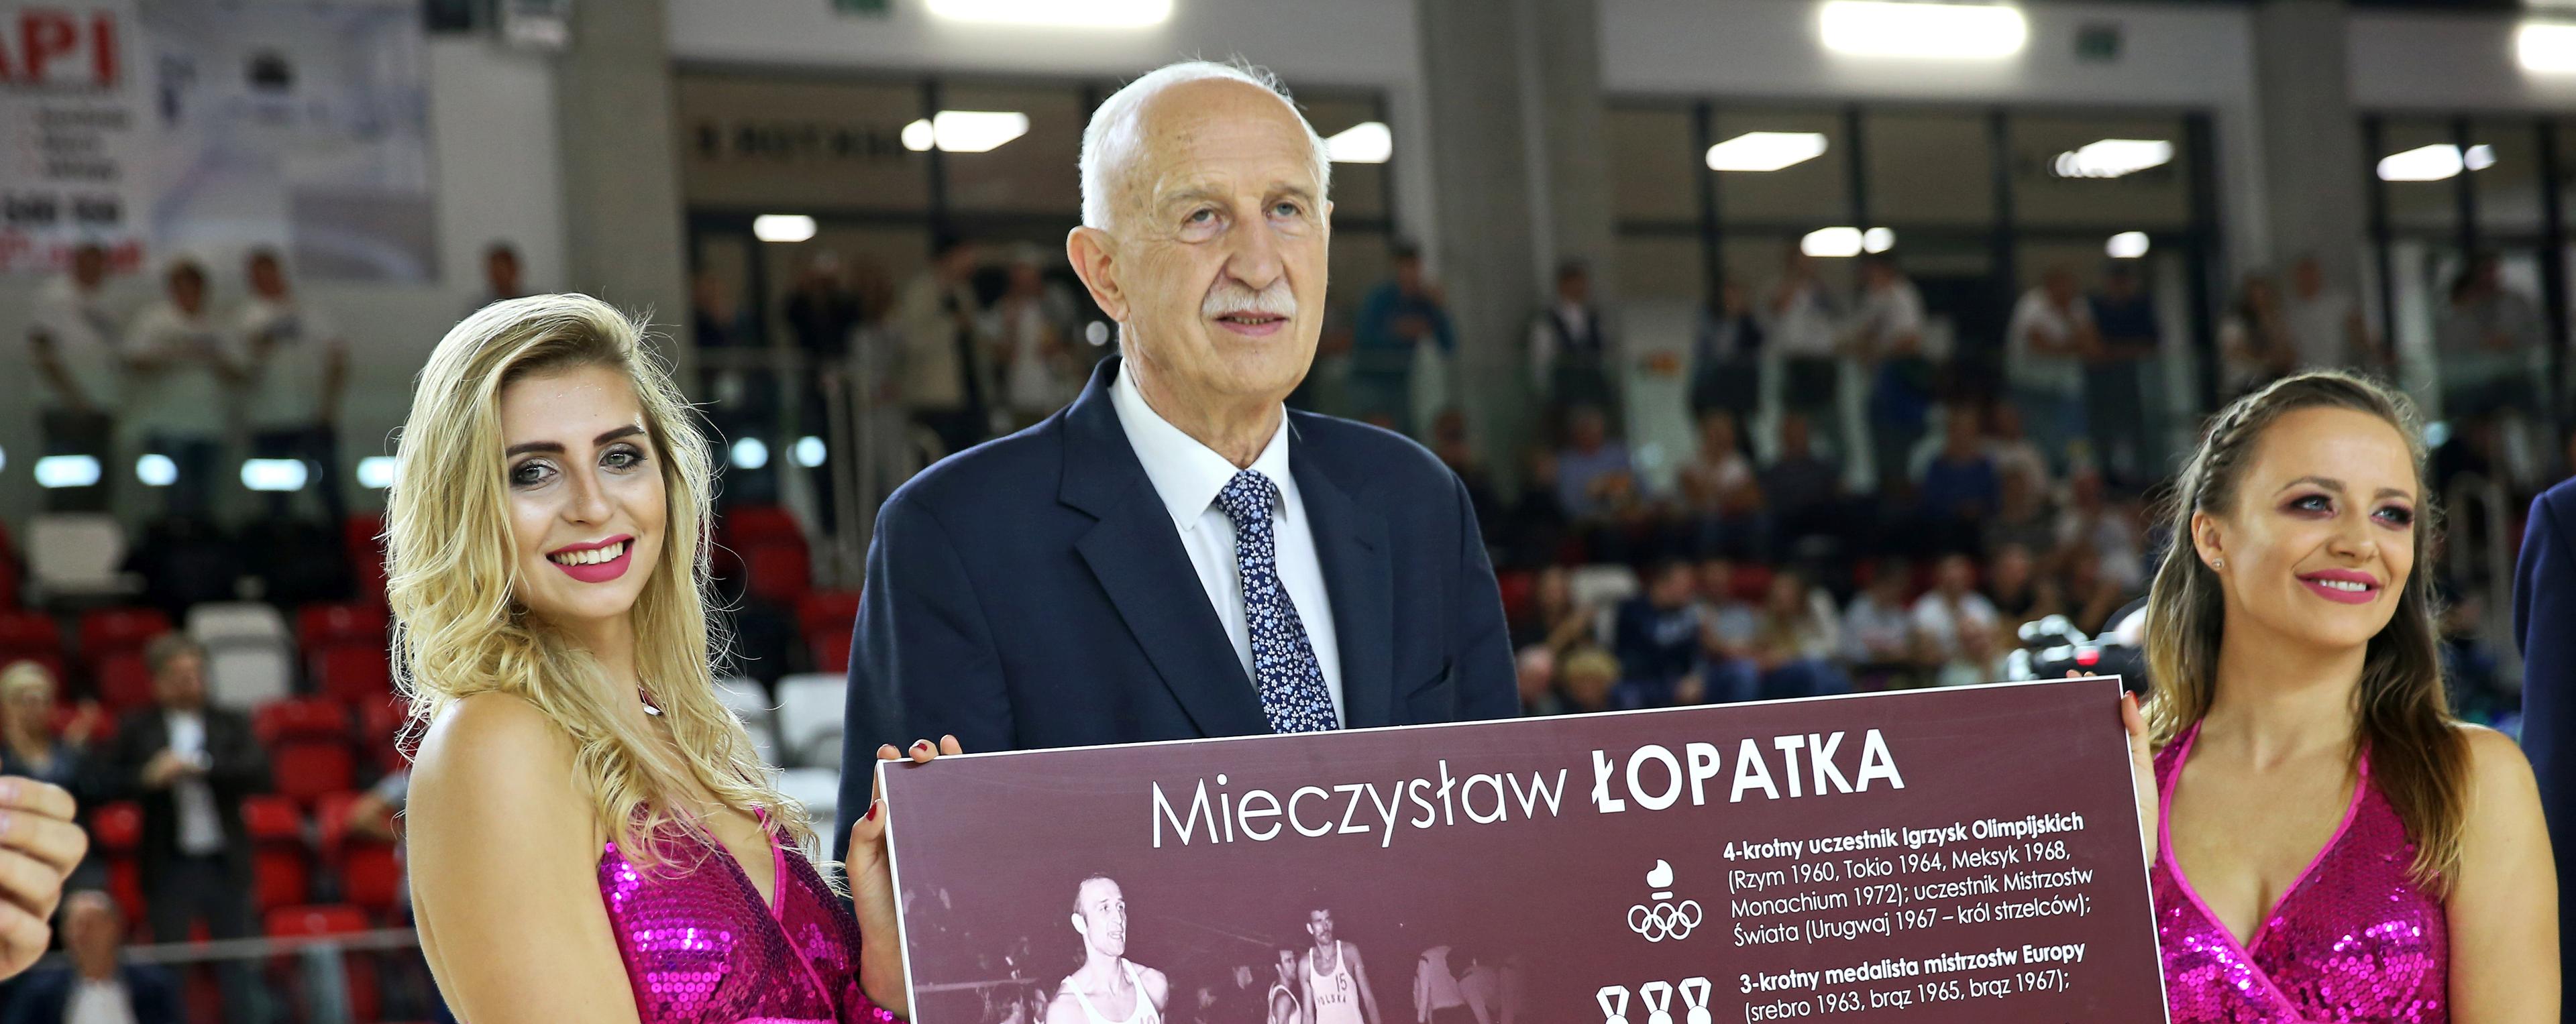 Mieczysław Łopatka w Hall of Fame FIBA